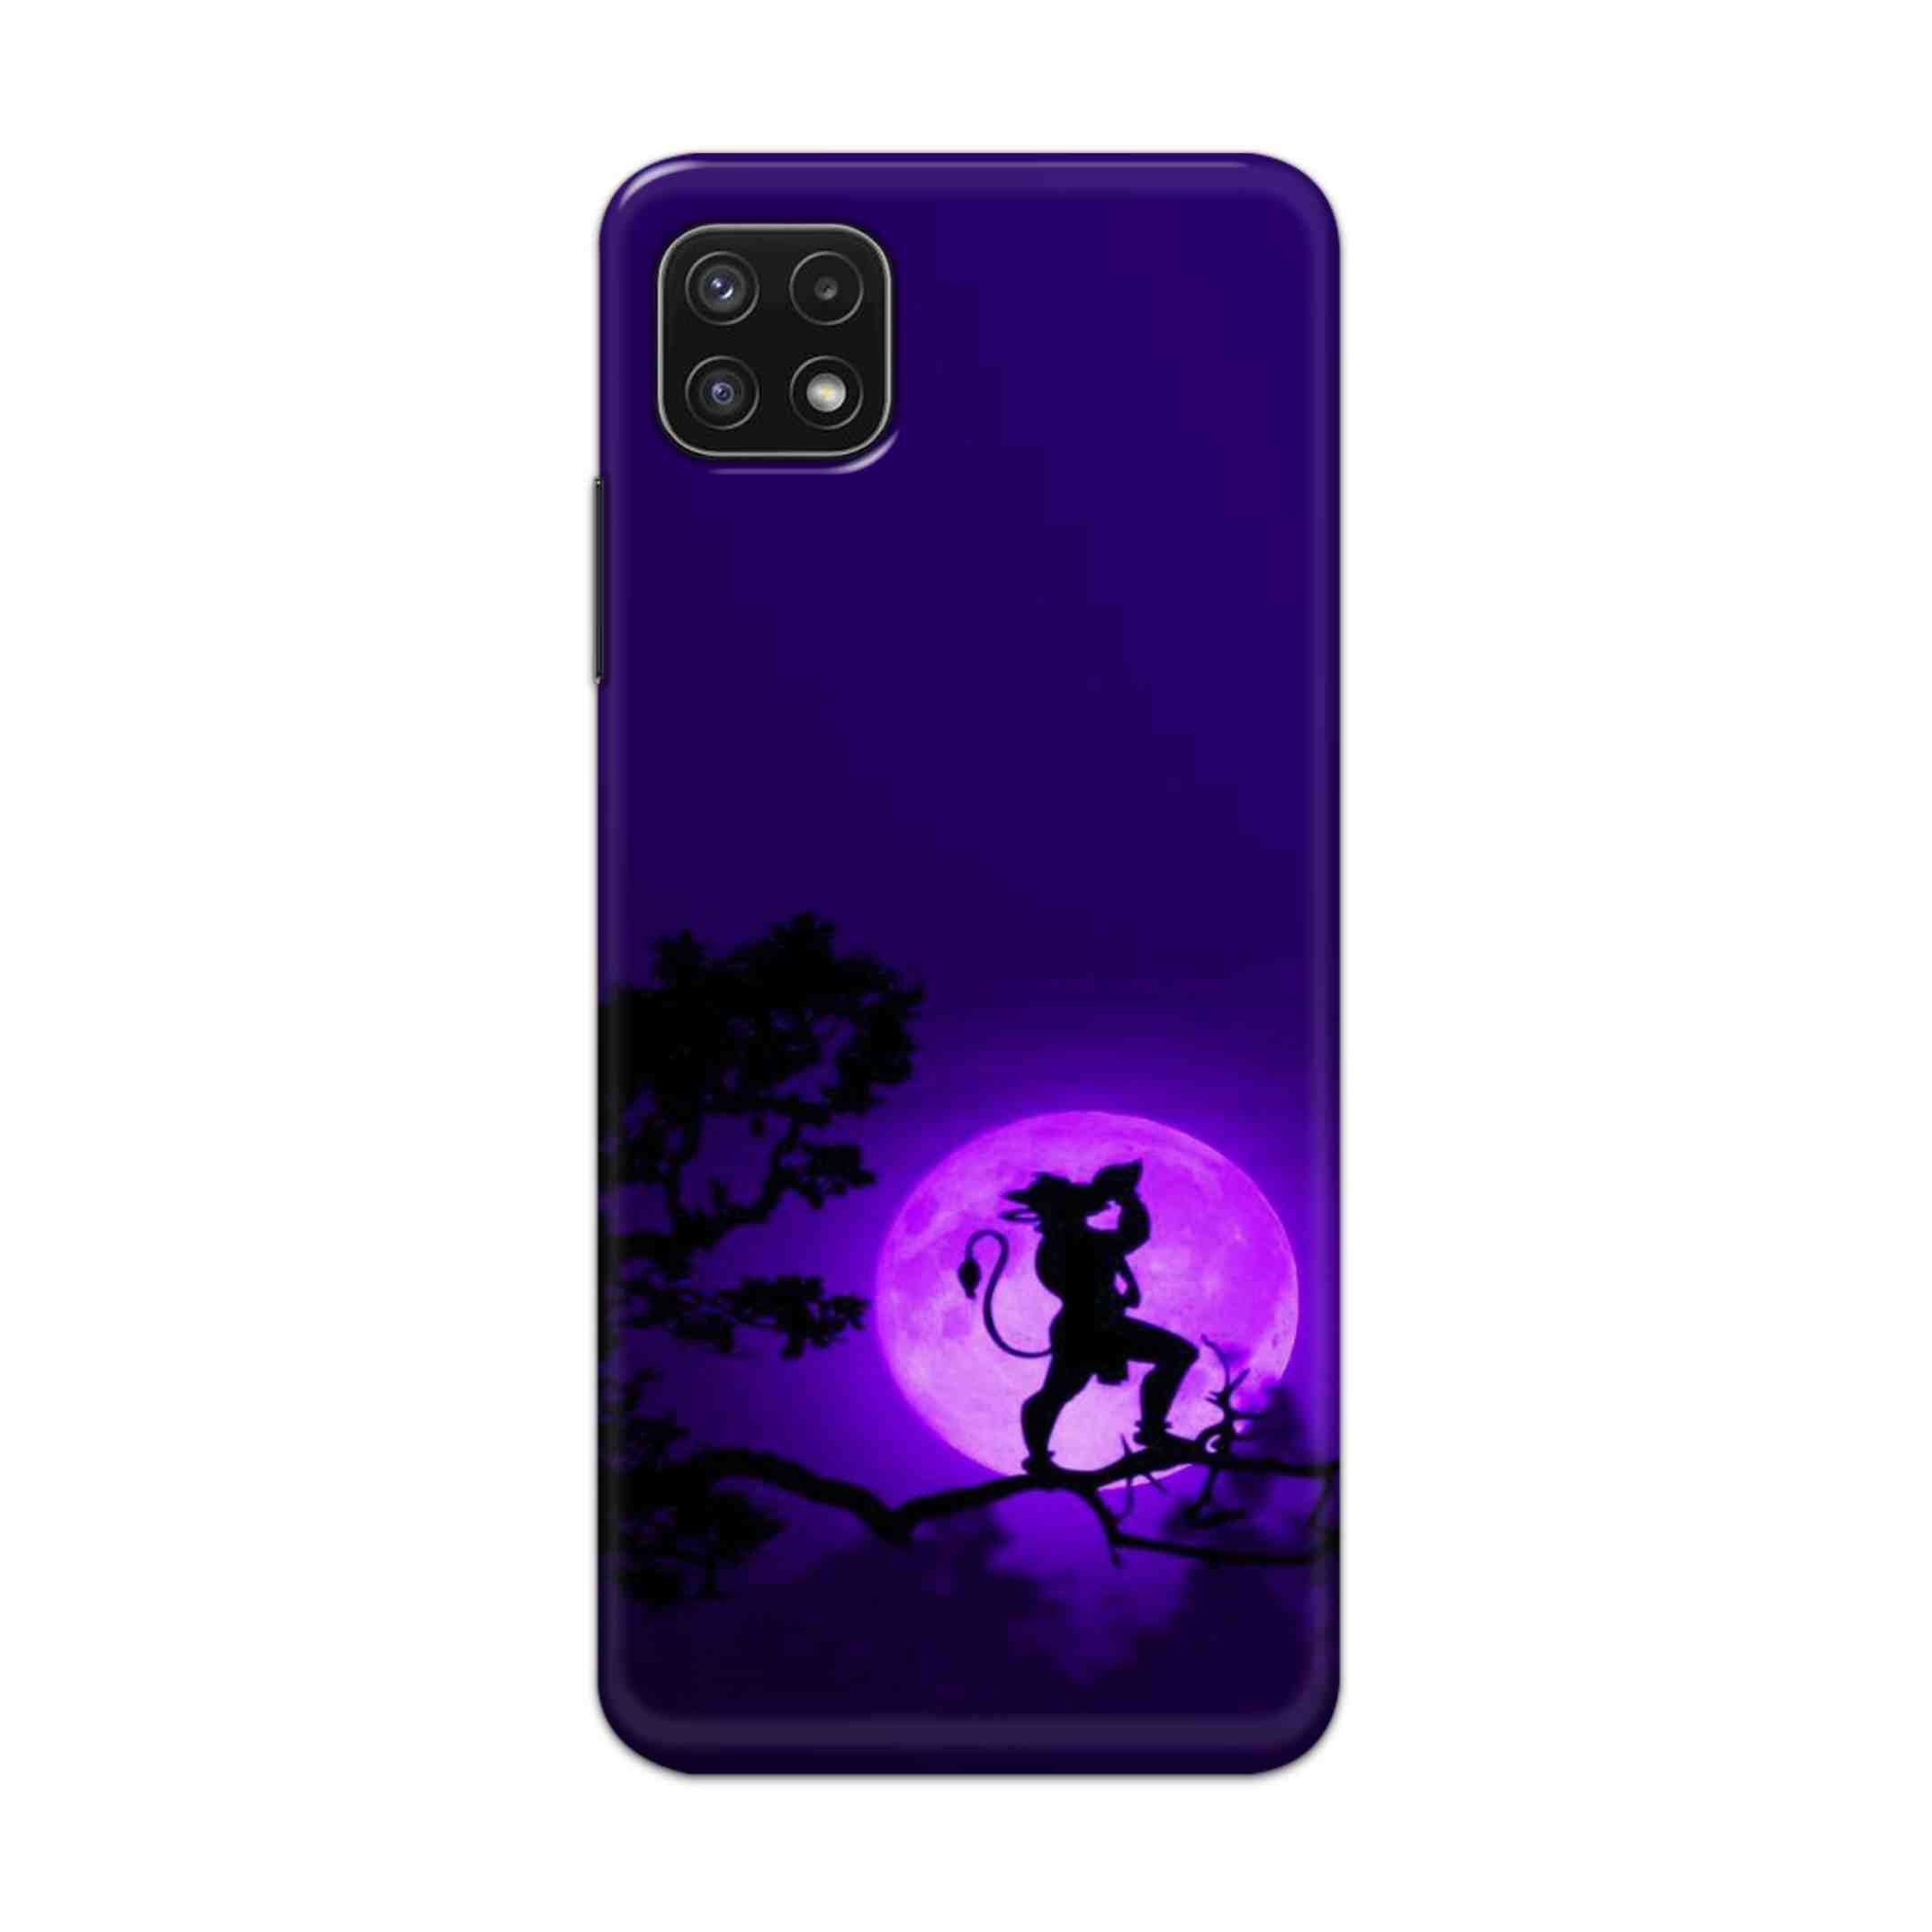 Buy Hanuman Hard Back Mobile Phone Case Cover For Samsung A22 5G Online